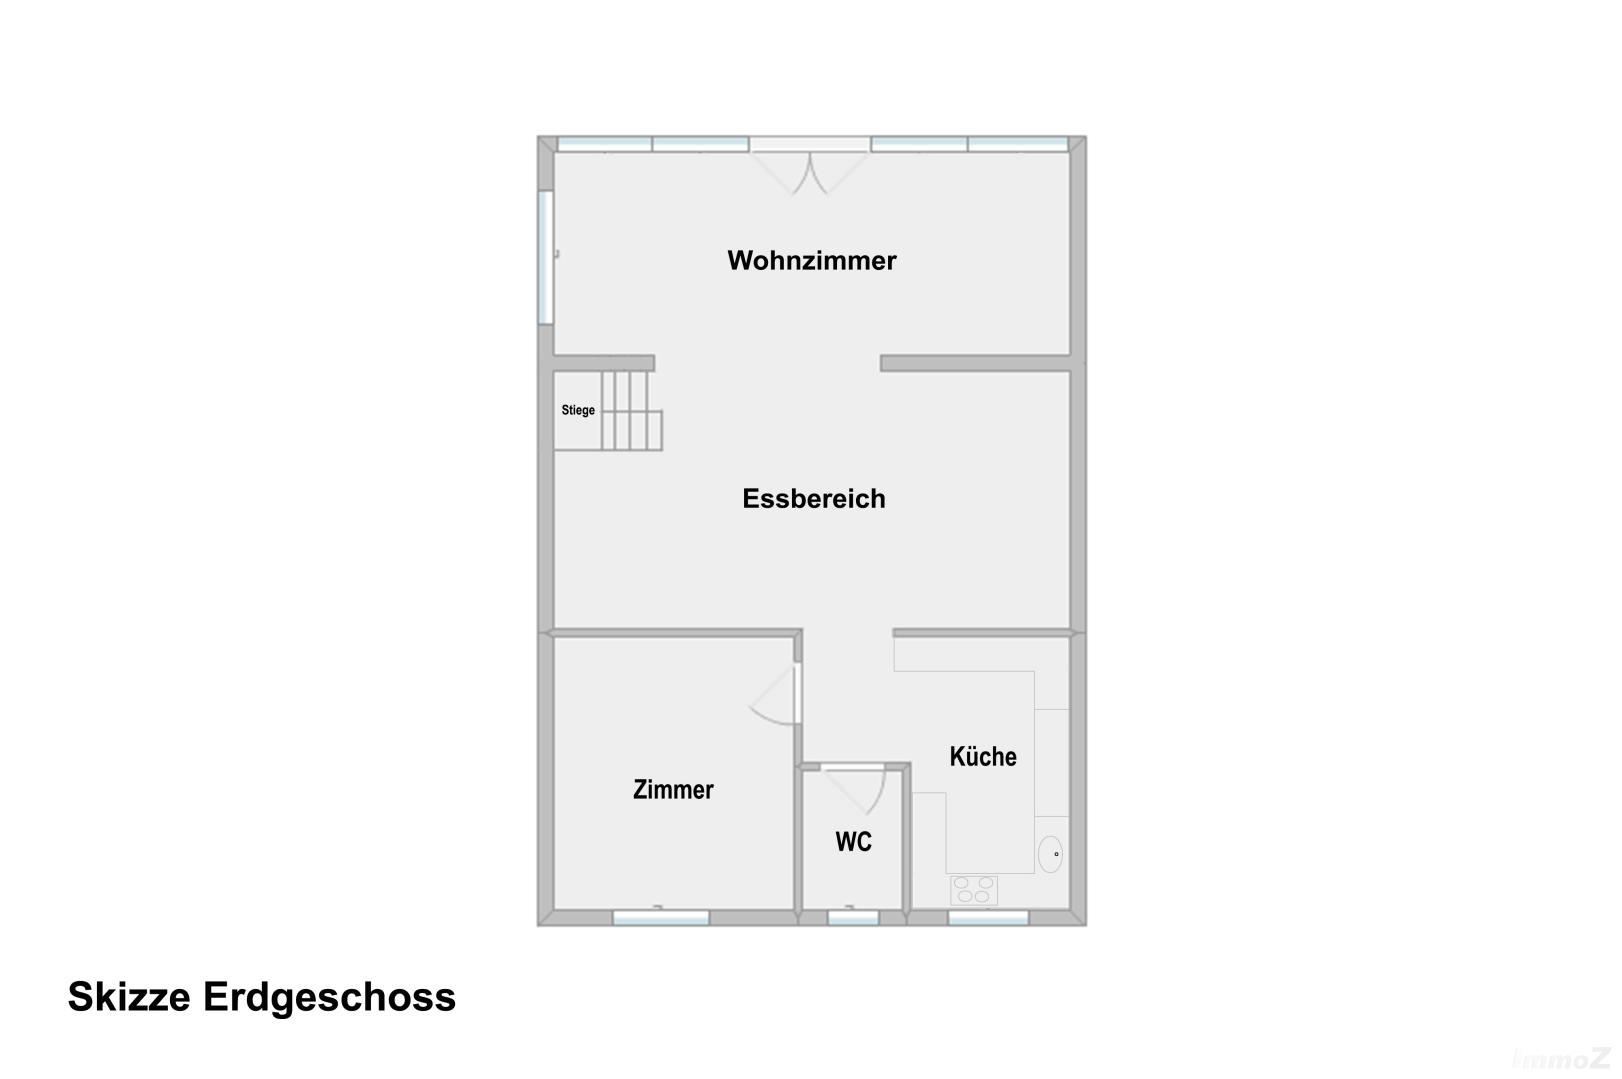 Haus zu kaufen: Kienersee ll, 2325 Velm - Grundriss EG